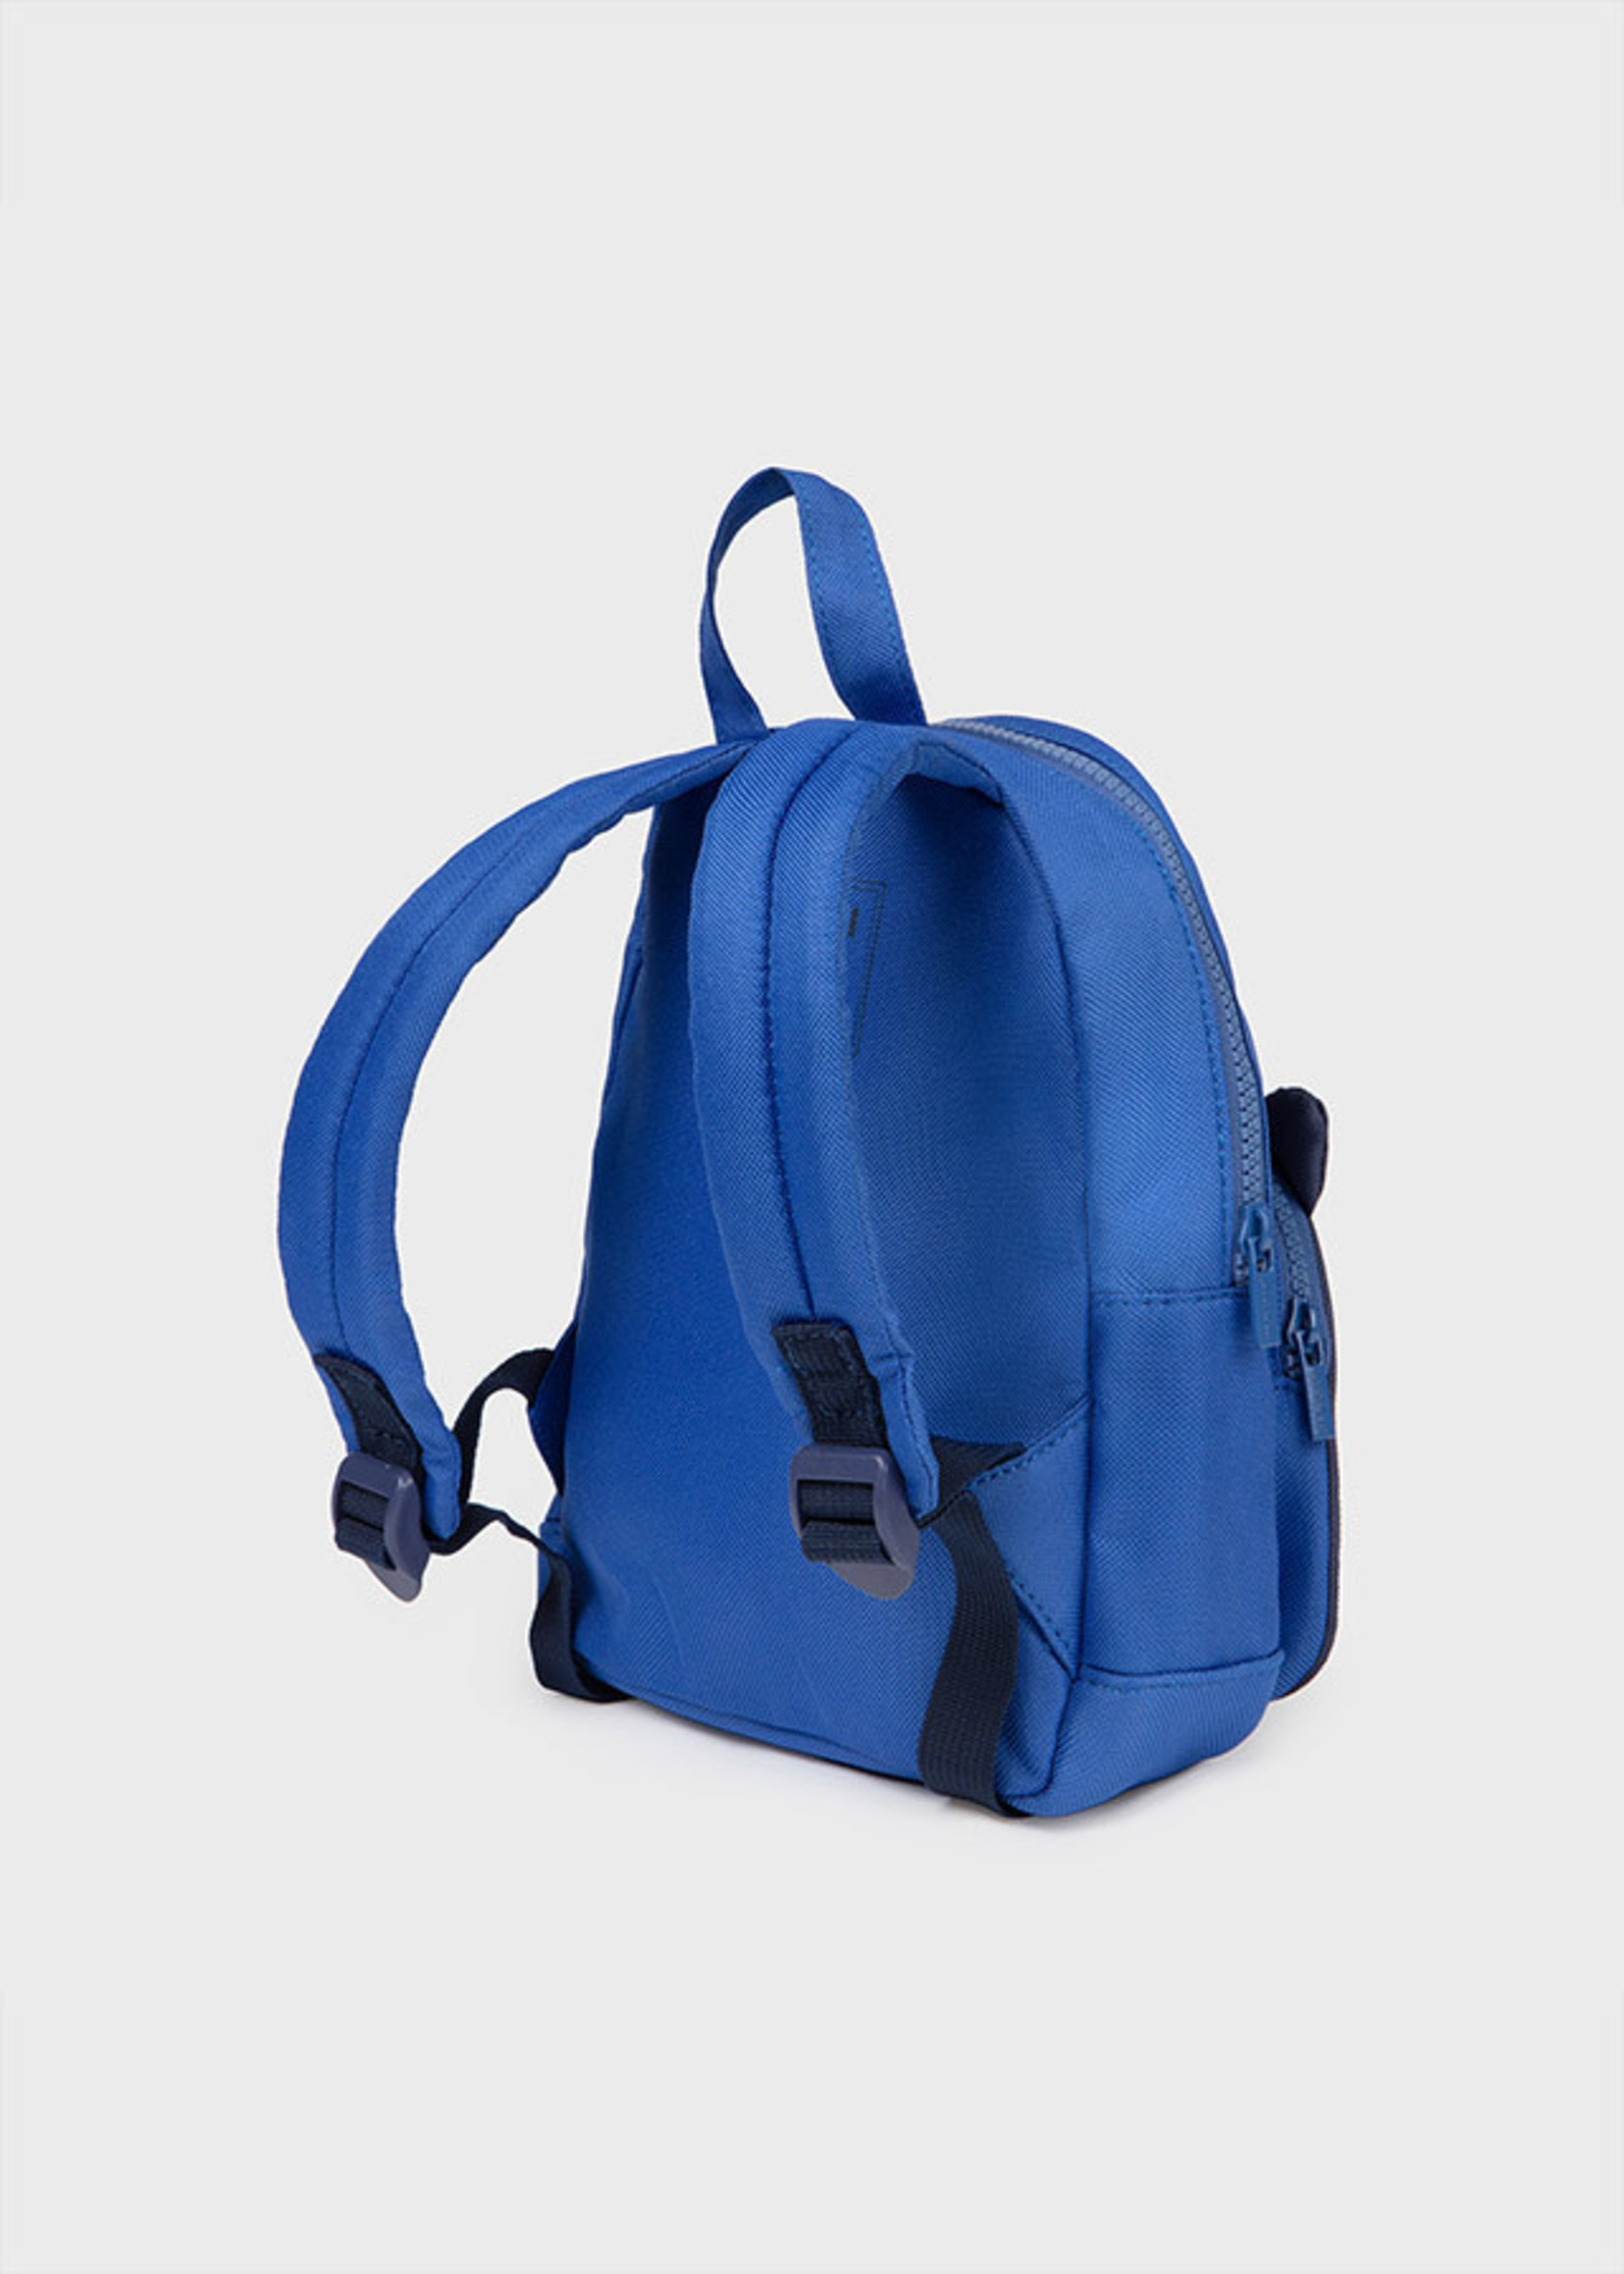 Mayoral Backpack, Tiger Blue